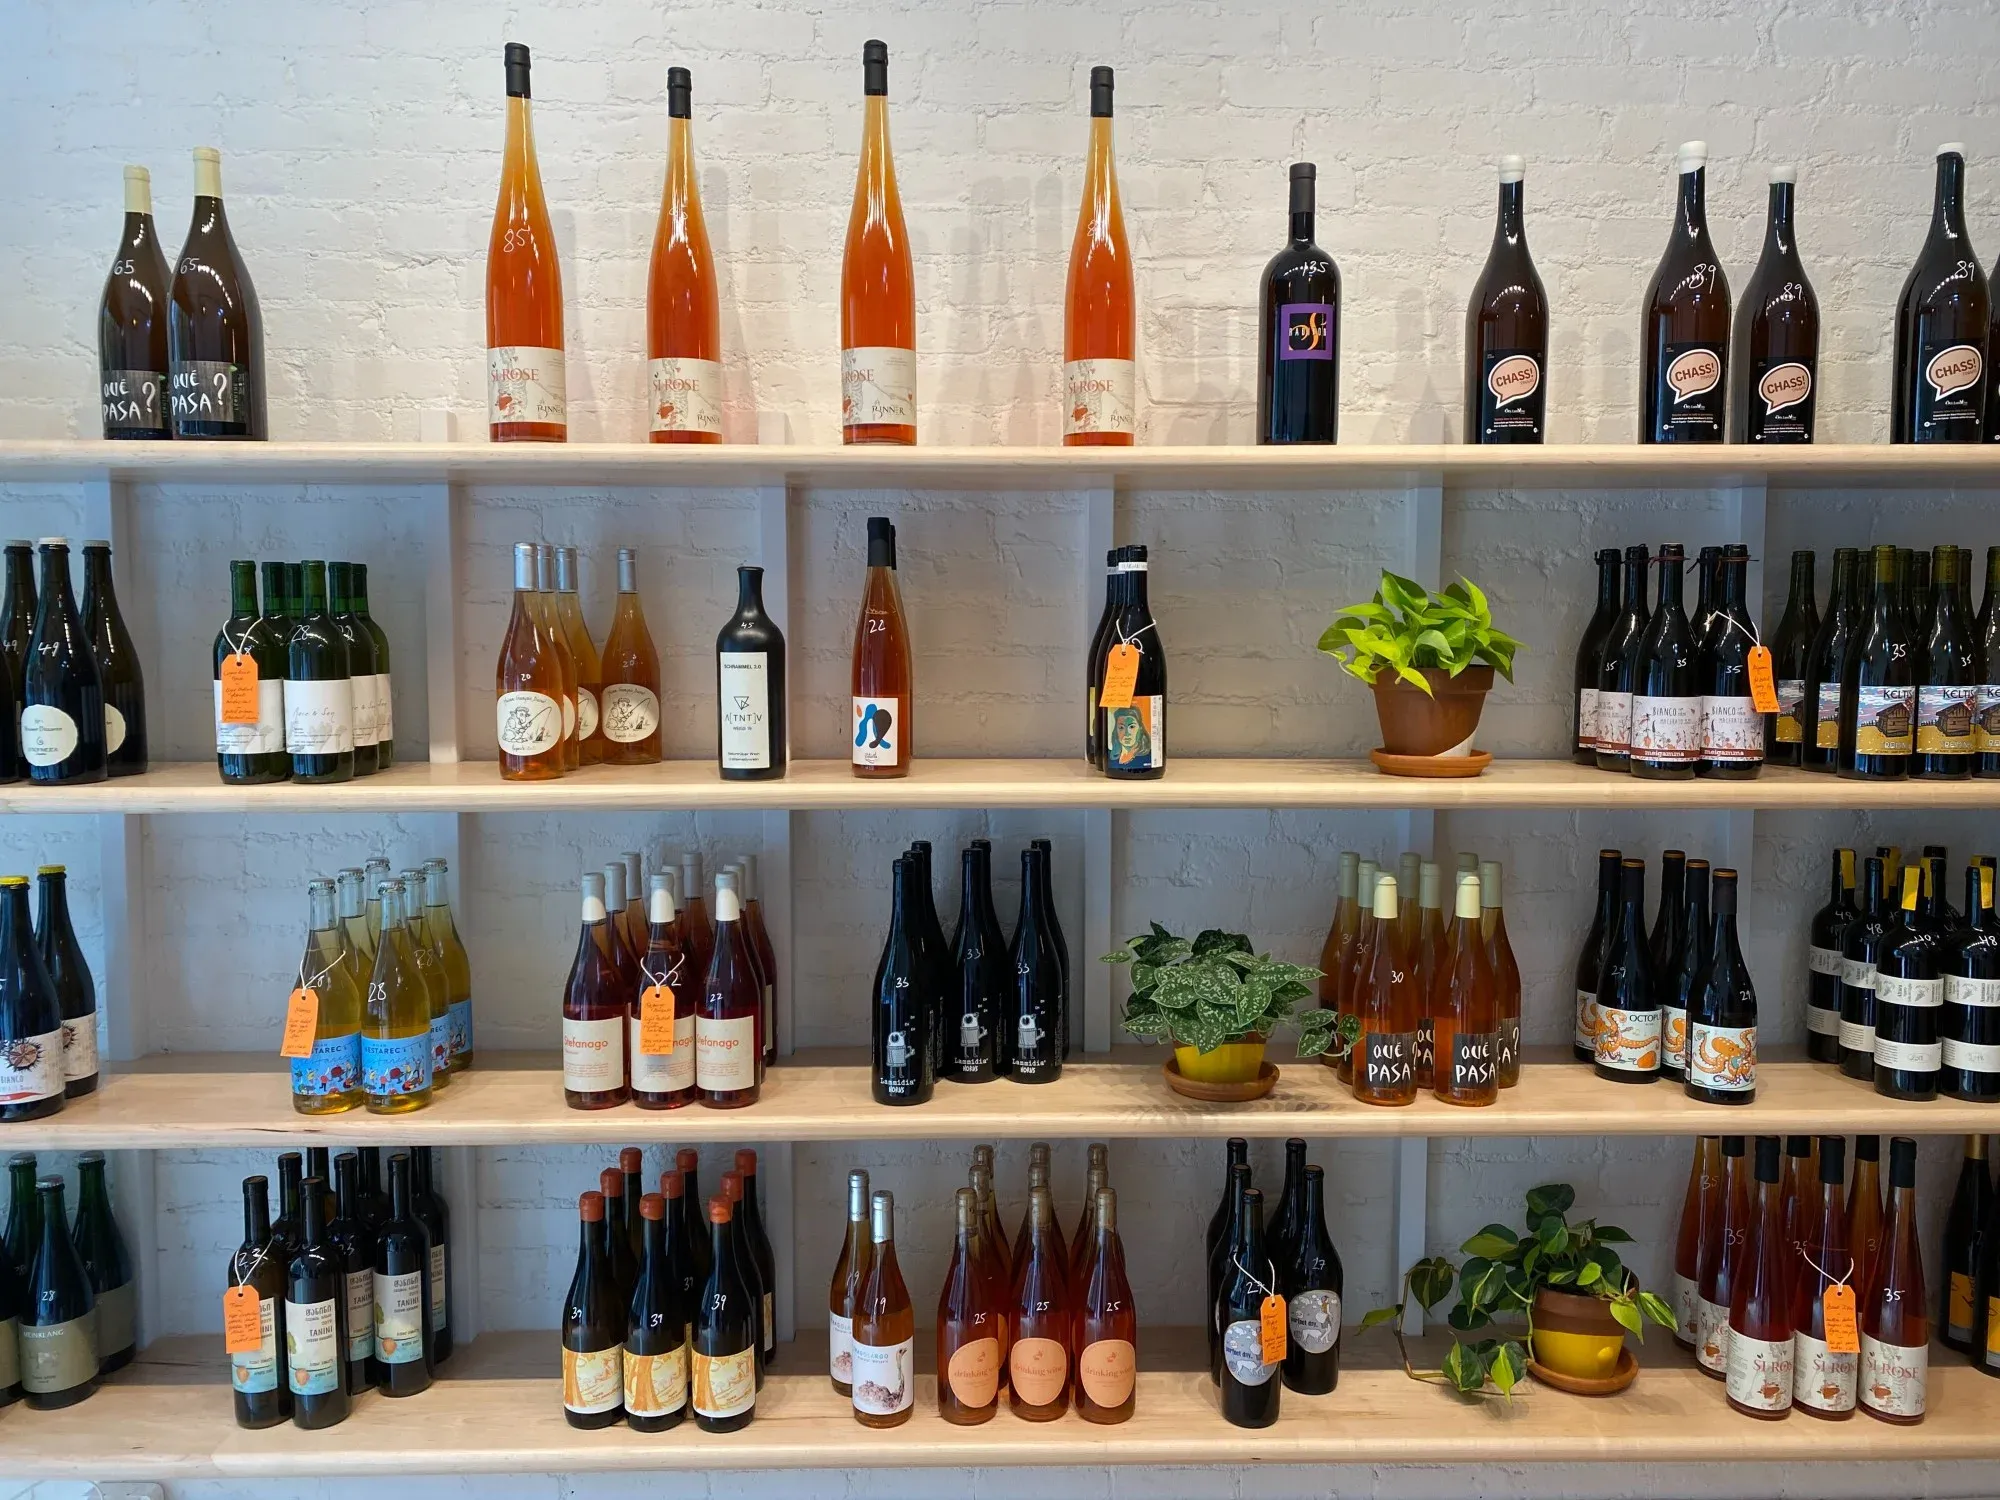 Shoppen Liquor Store in Denmark, europe | Spirits,Beverages - Country Helper